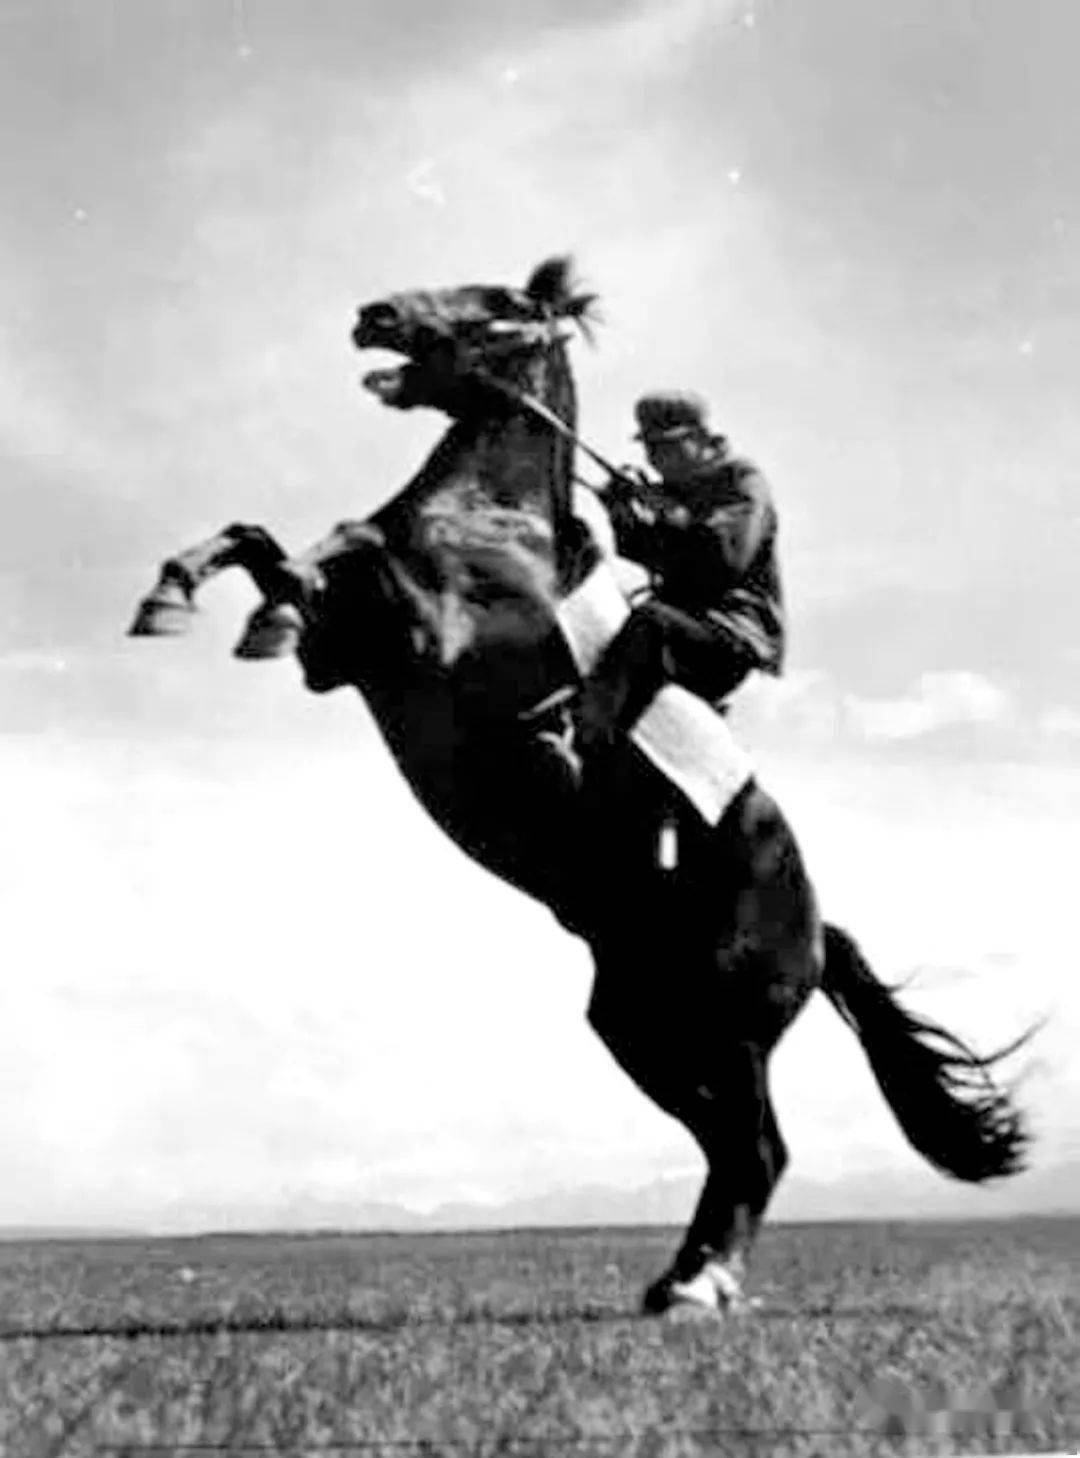 内蒙古骑兵 ——为了民族解放冲锋陷阵